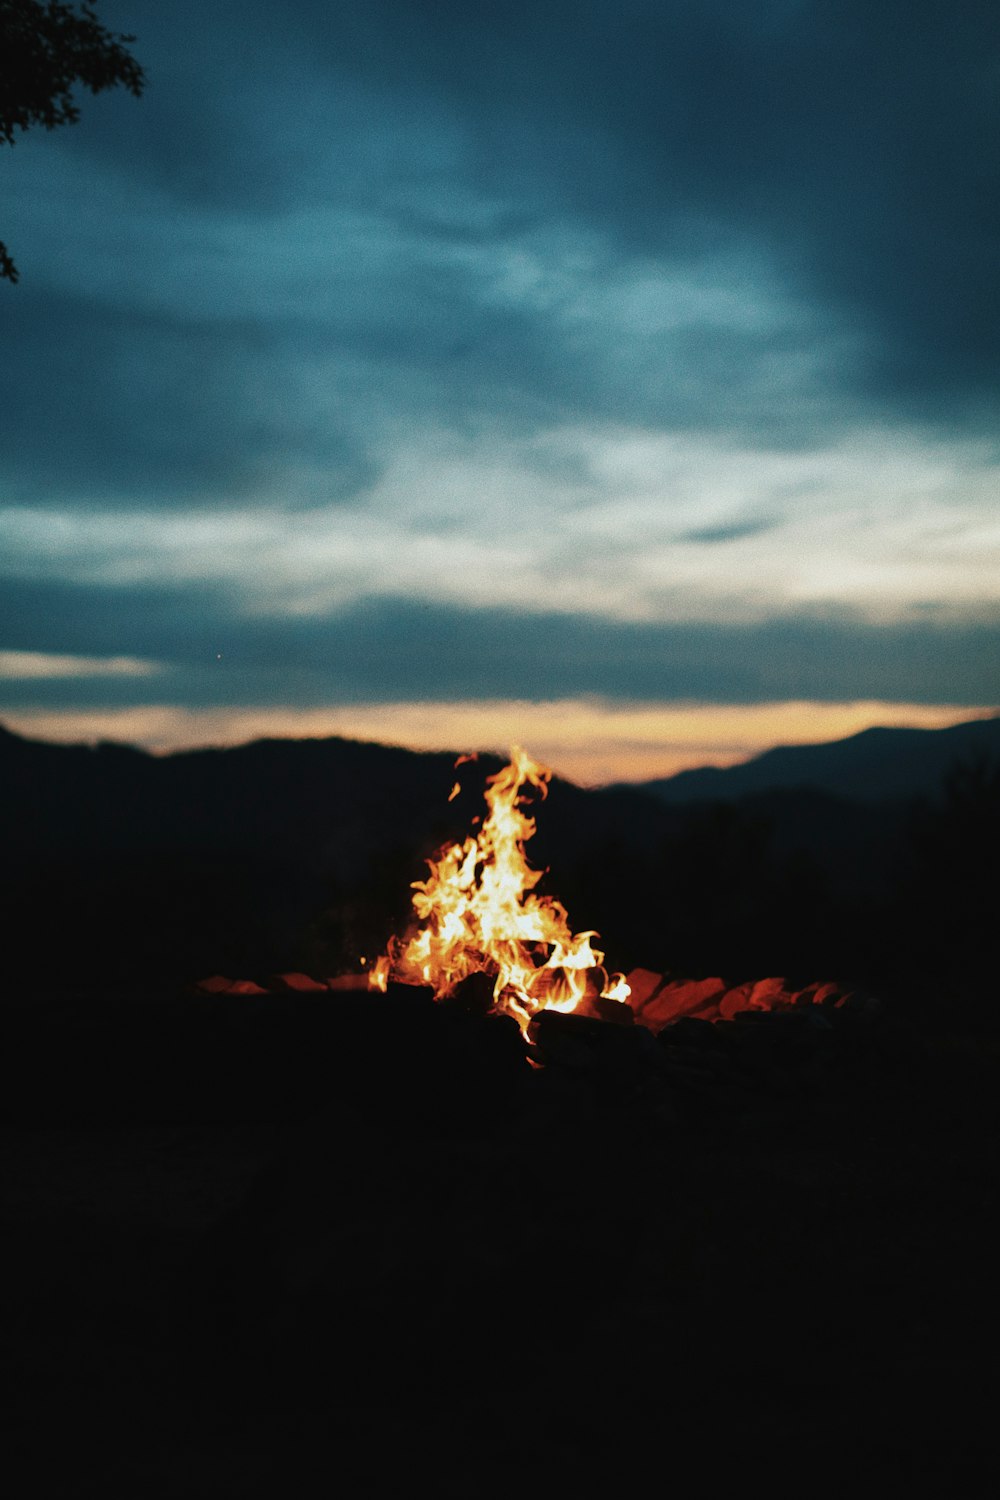 夜間の焚き火の写真撮影